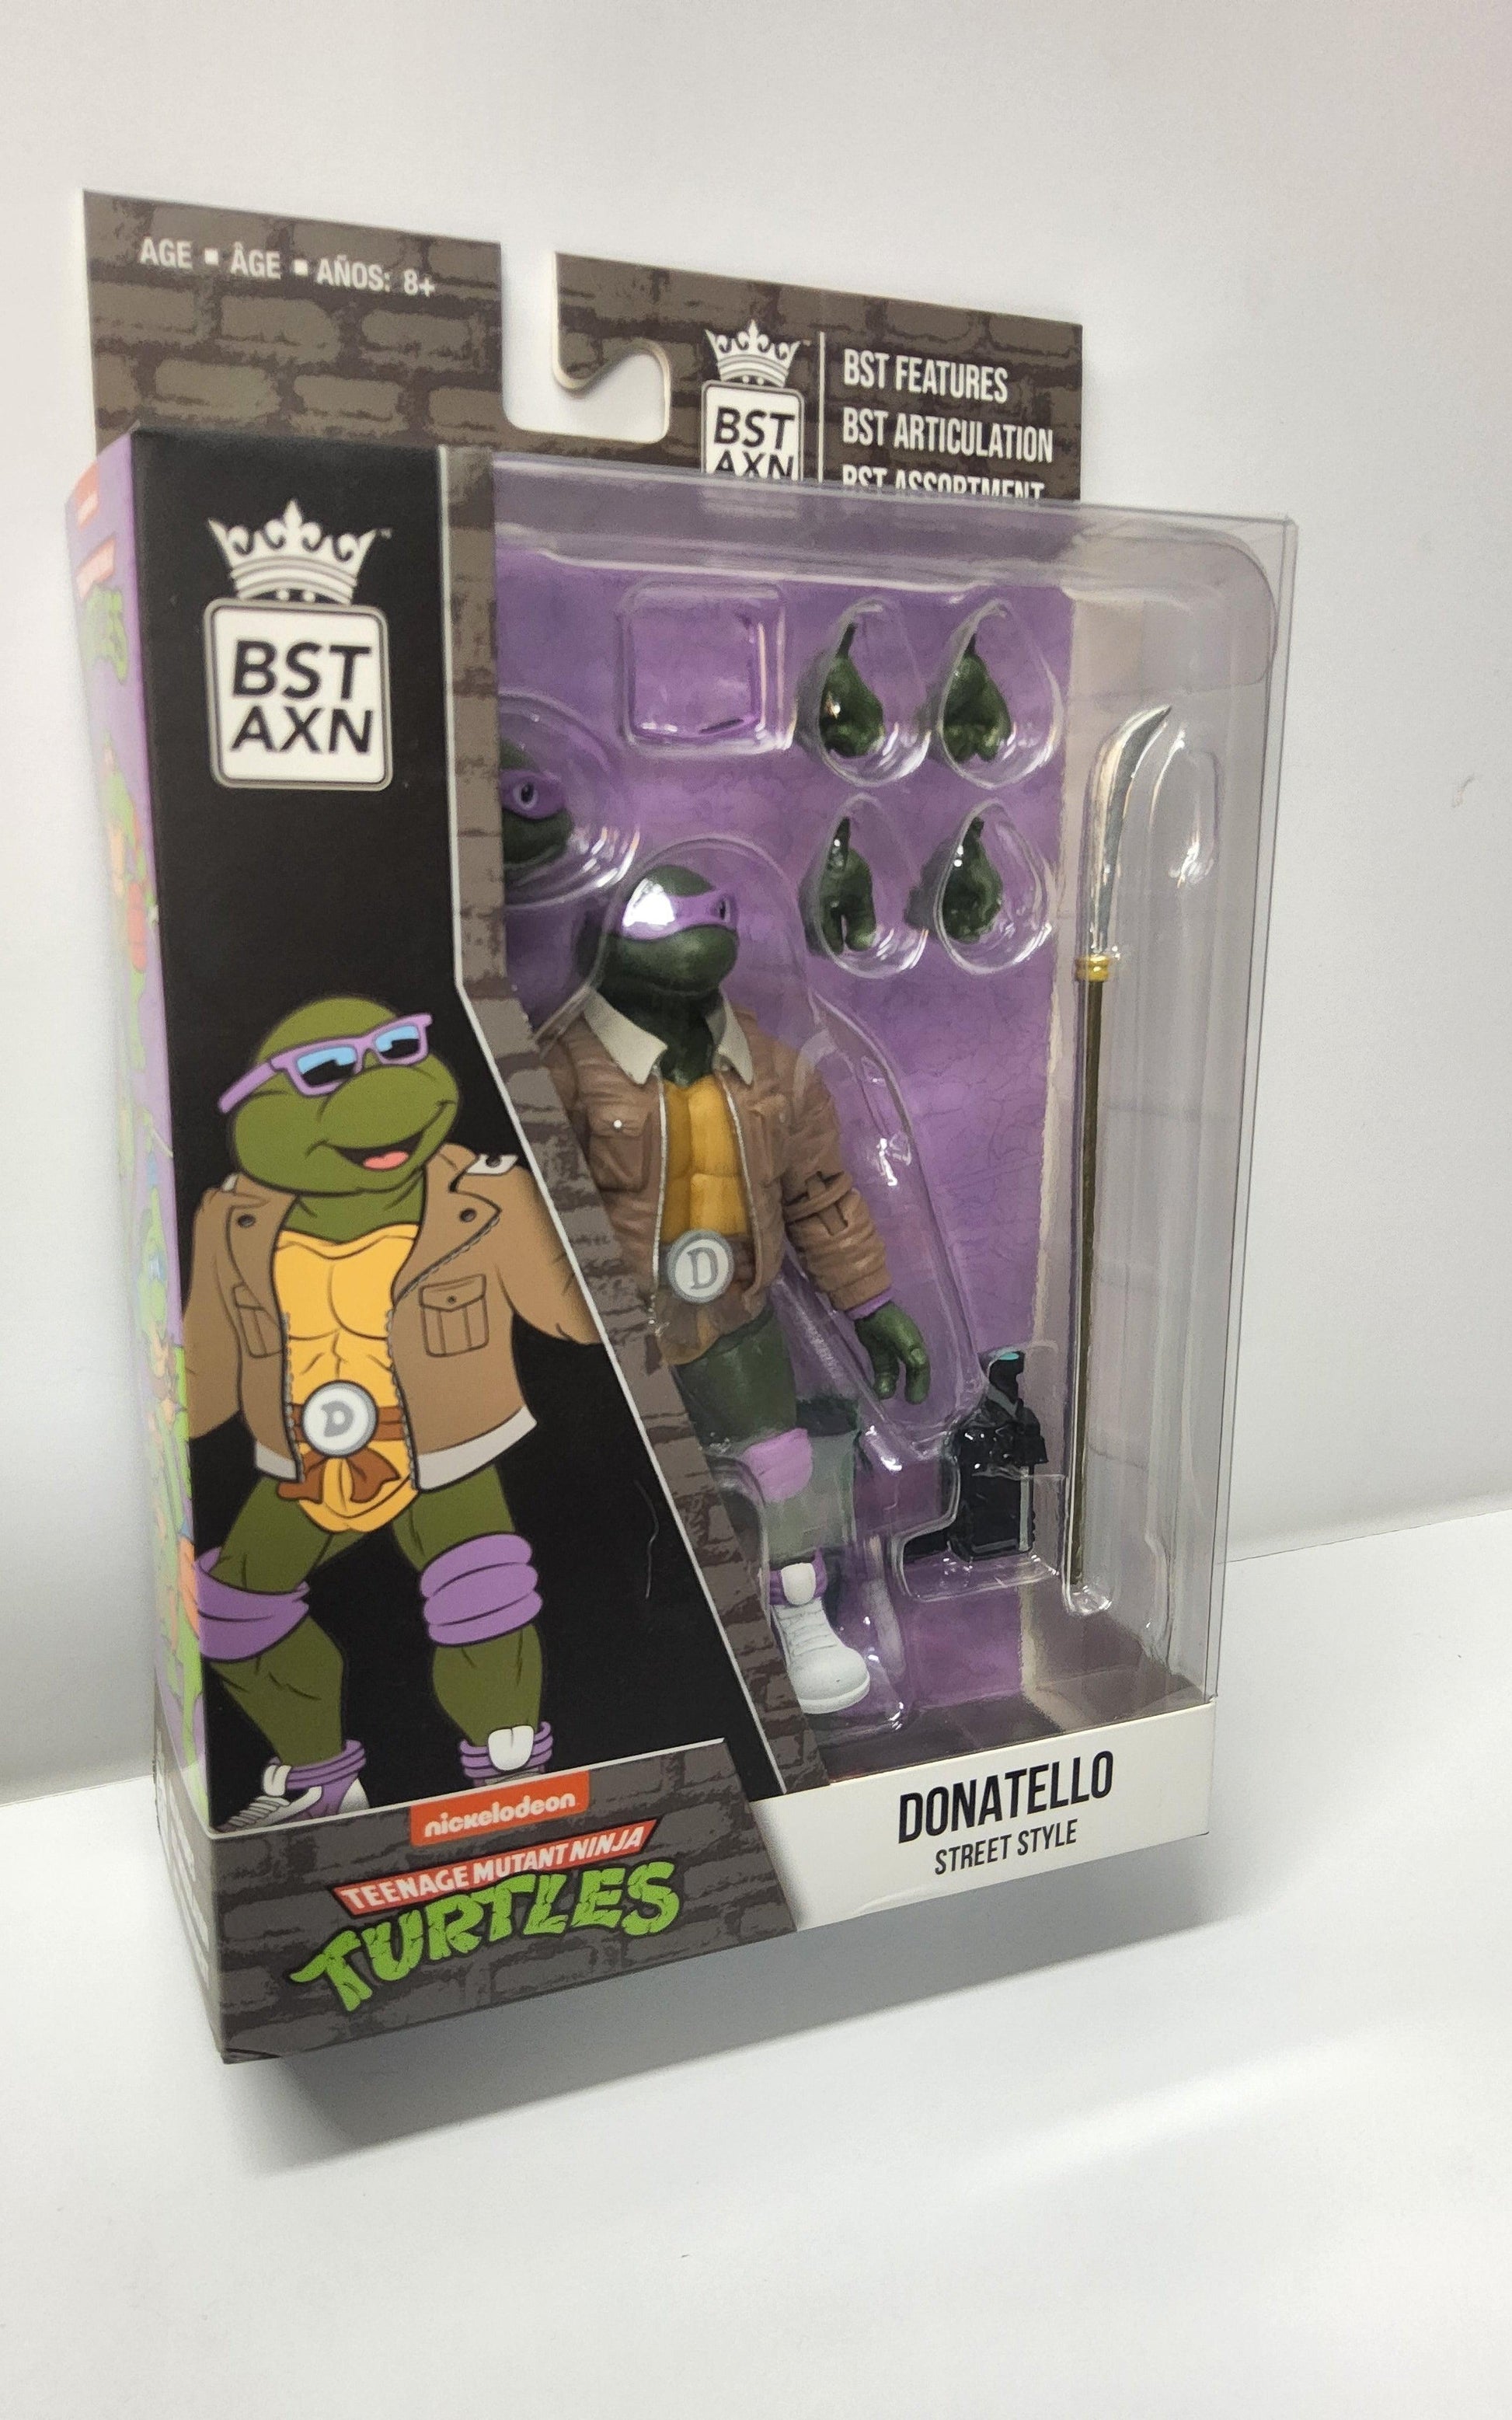 Teenage Mutant Ninja Turtles Donatello Street Style Nickelodeon BST AXN - Logan's Toy Chest